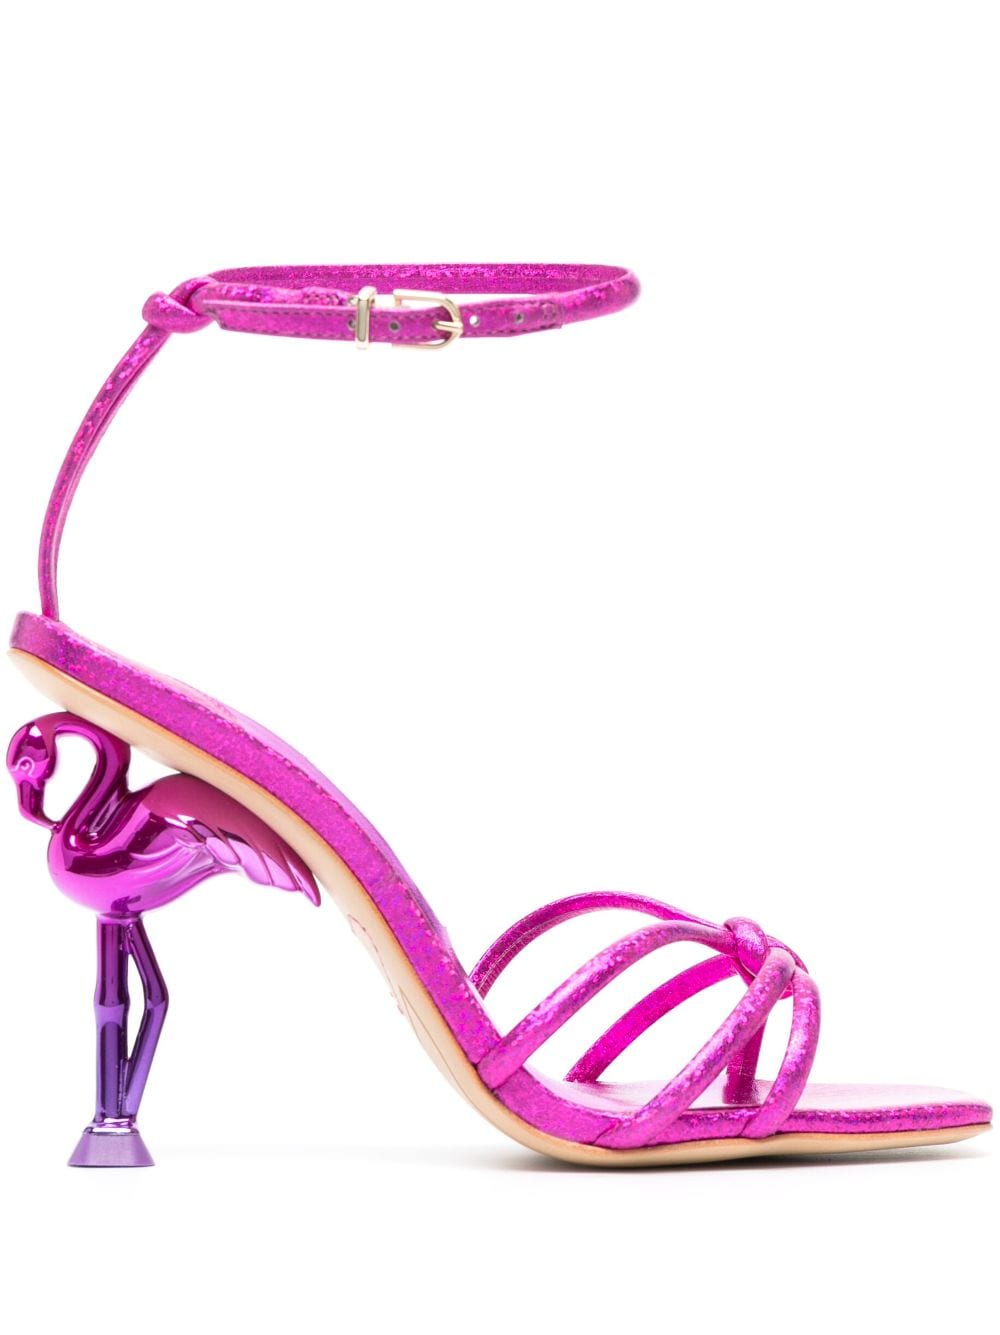 Sophia Webster Flo flamingo 115mm confetti sandals - Pink von Sophia Webster